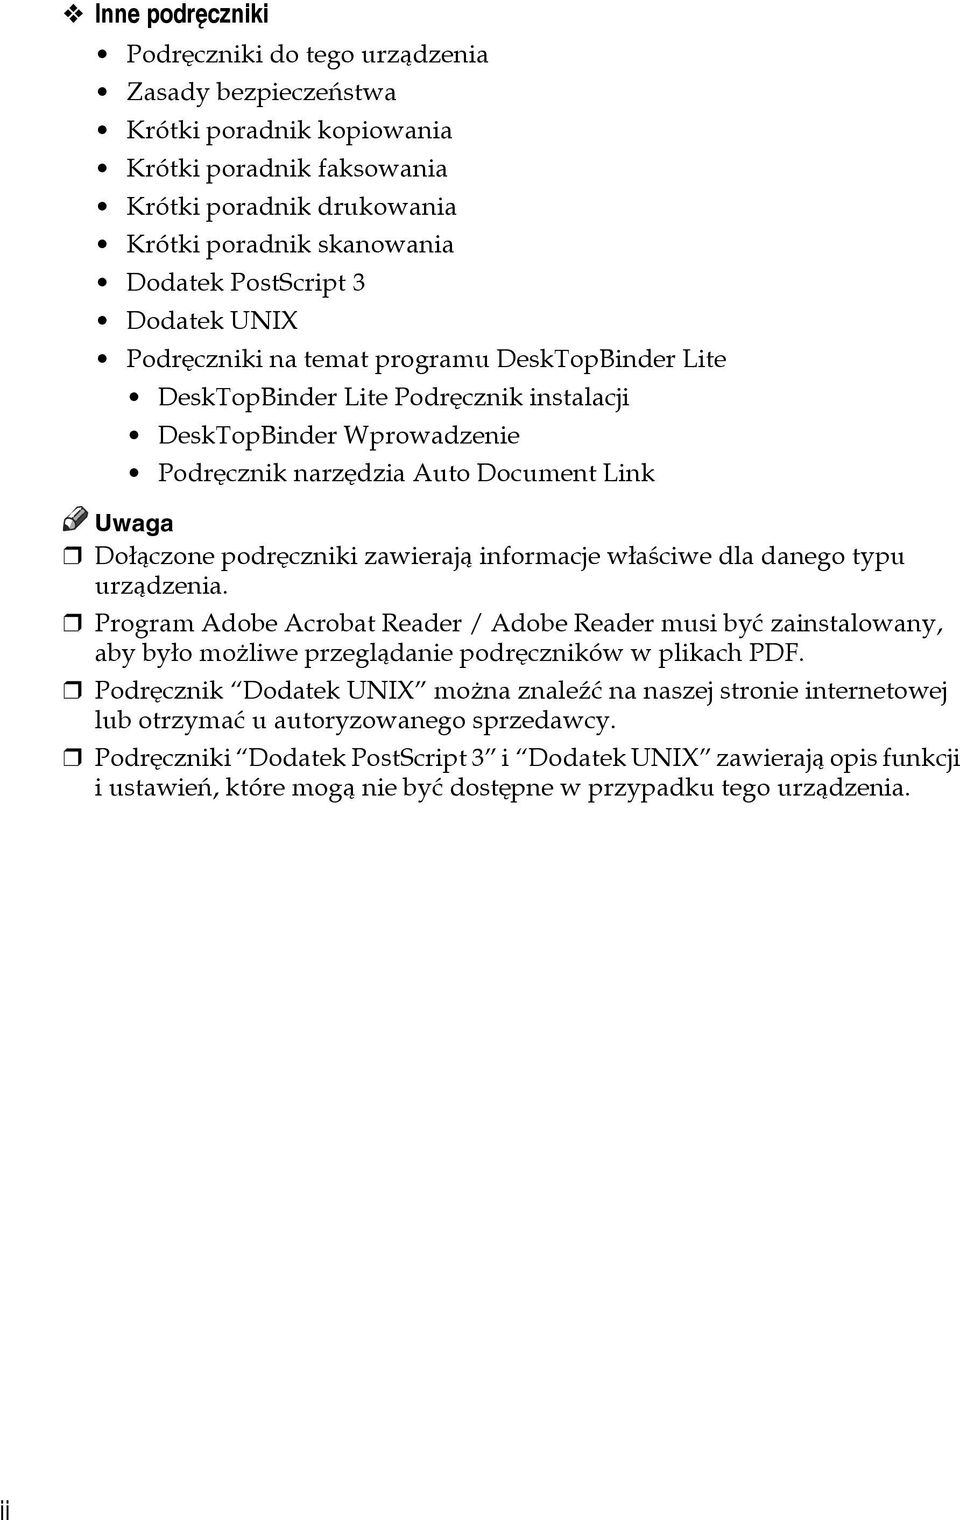 zawierajà informacje wâaãciwe dla danego typu urzàdzenia. Program Adobe Acrobat Reader / Adobe Reader musi byæ zainstalowany, aby byâo moåliwe przeglàdanie podrêczników w plikach PDF.